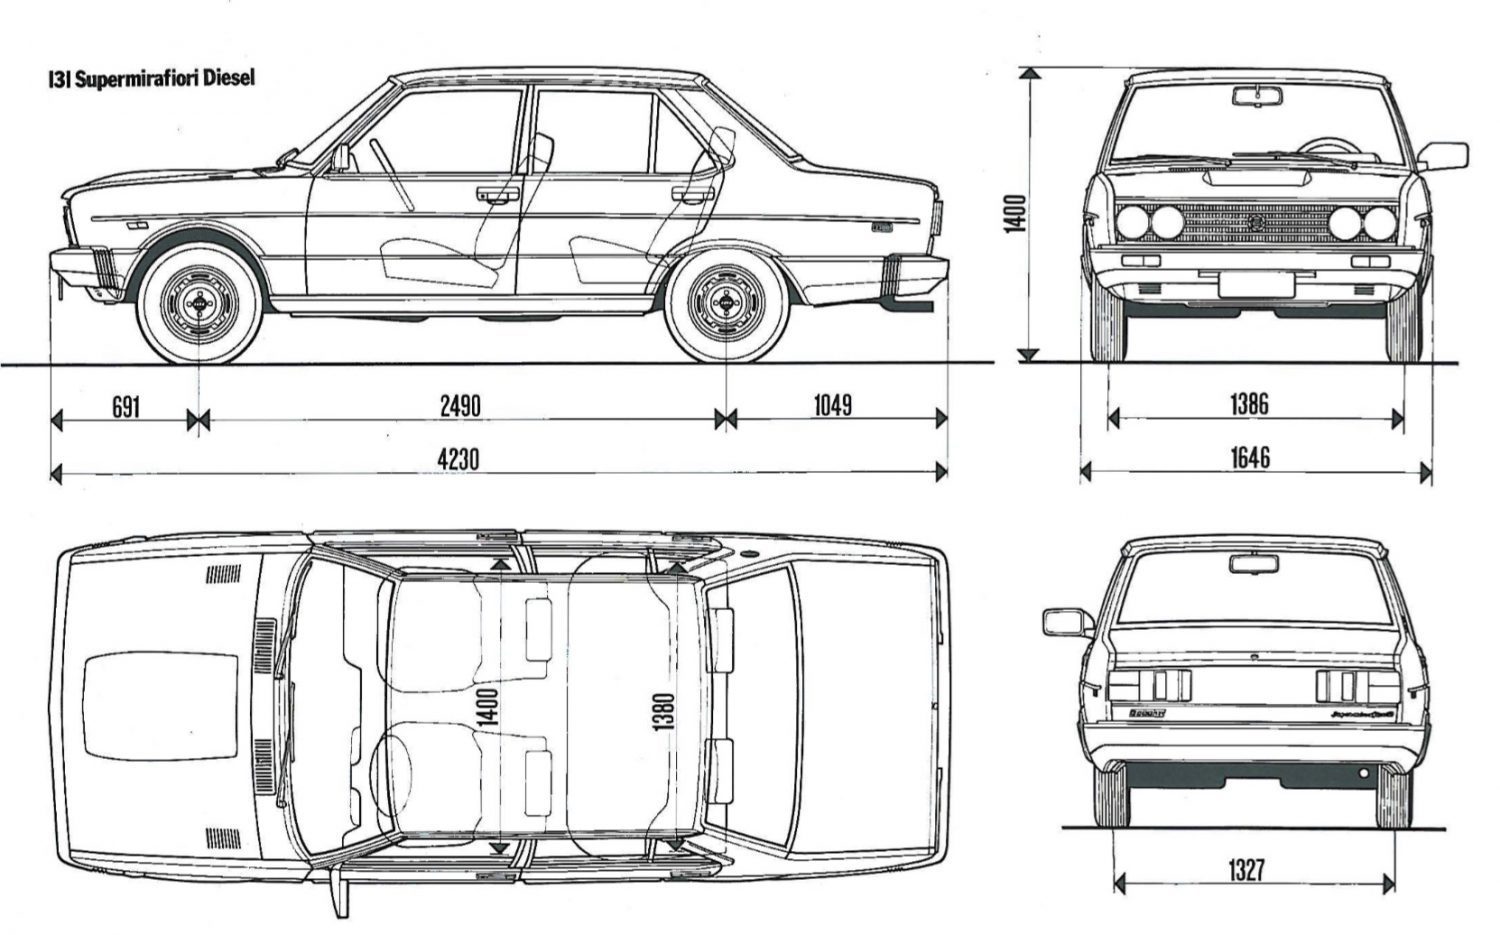 Fiat 131 terza serie, semplicemente indimenticabile